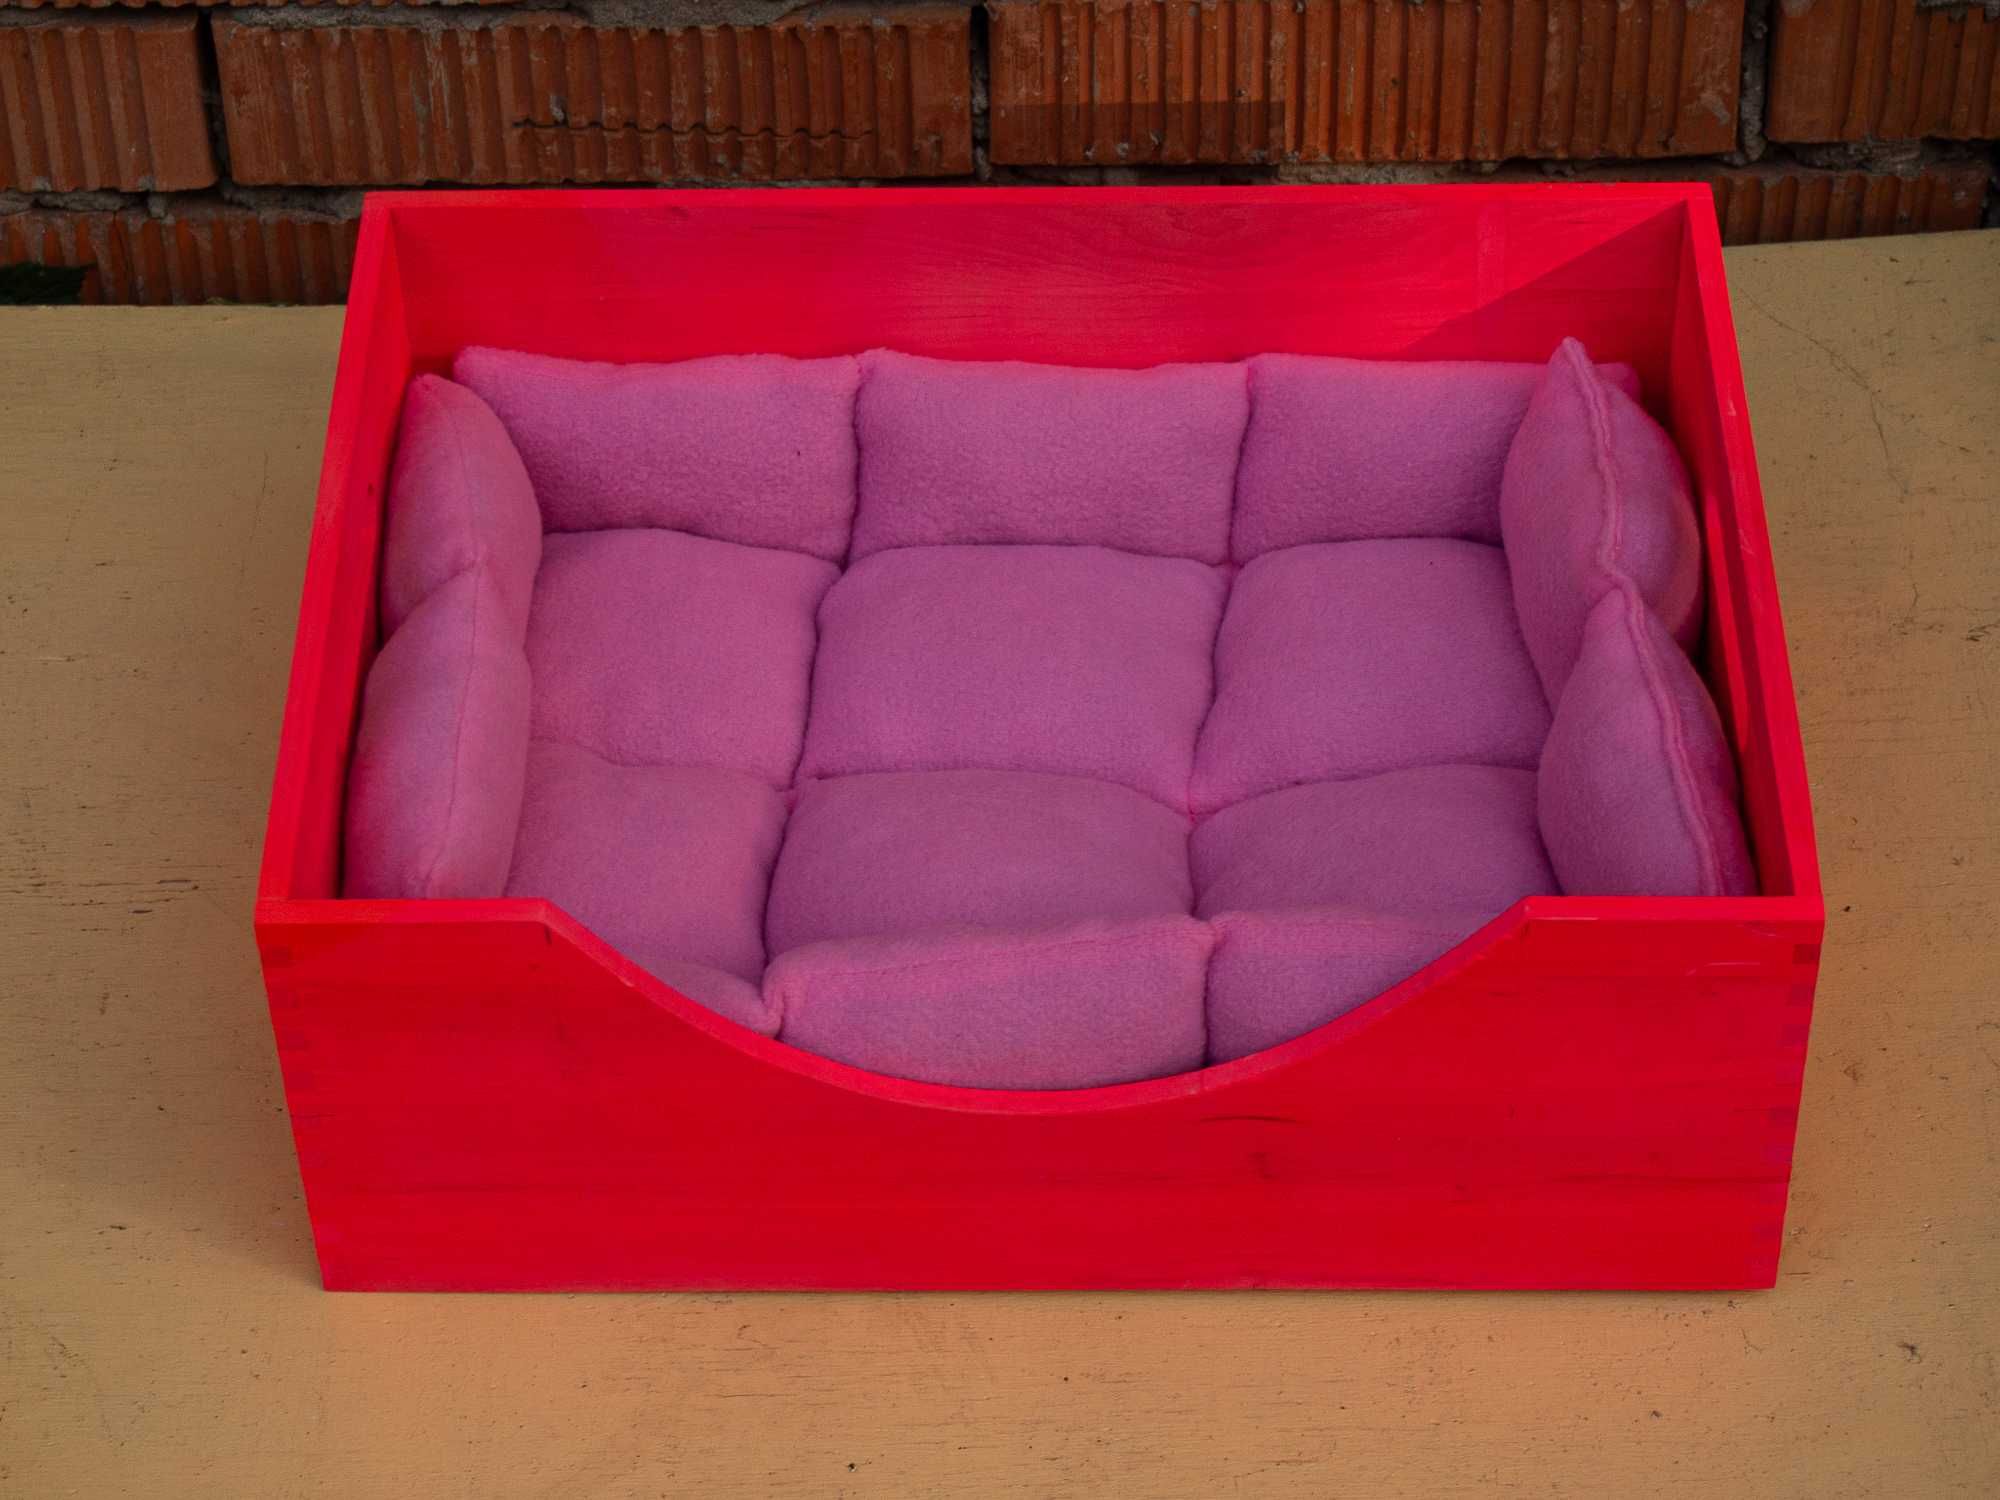 Гламурное место-лежак в стиле Барби для вашей маленькой собачки!